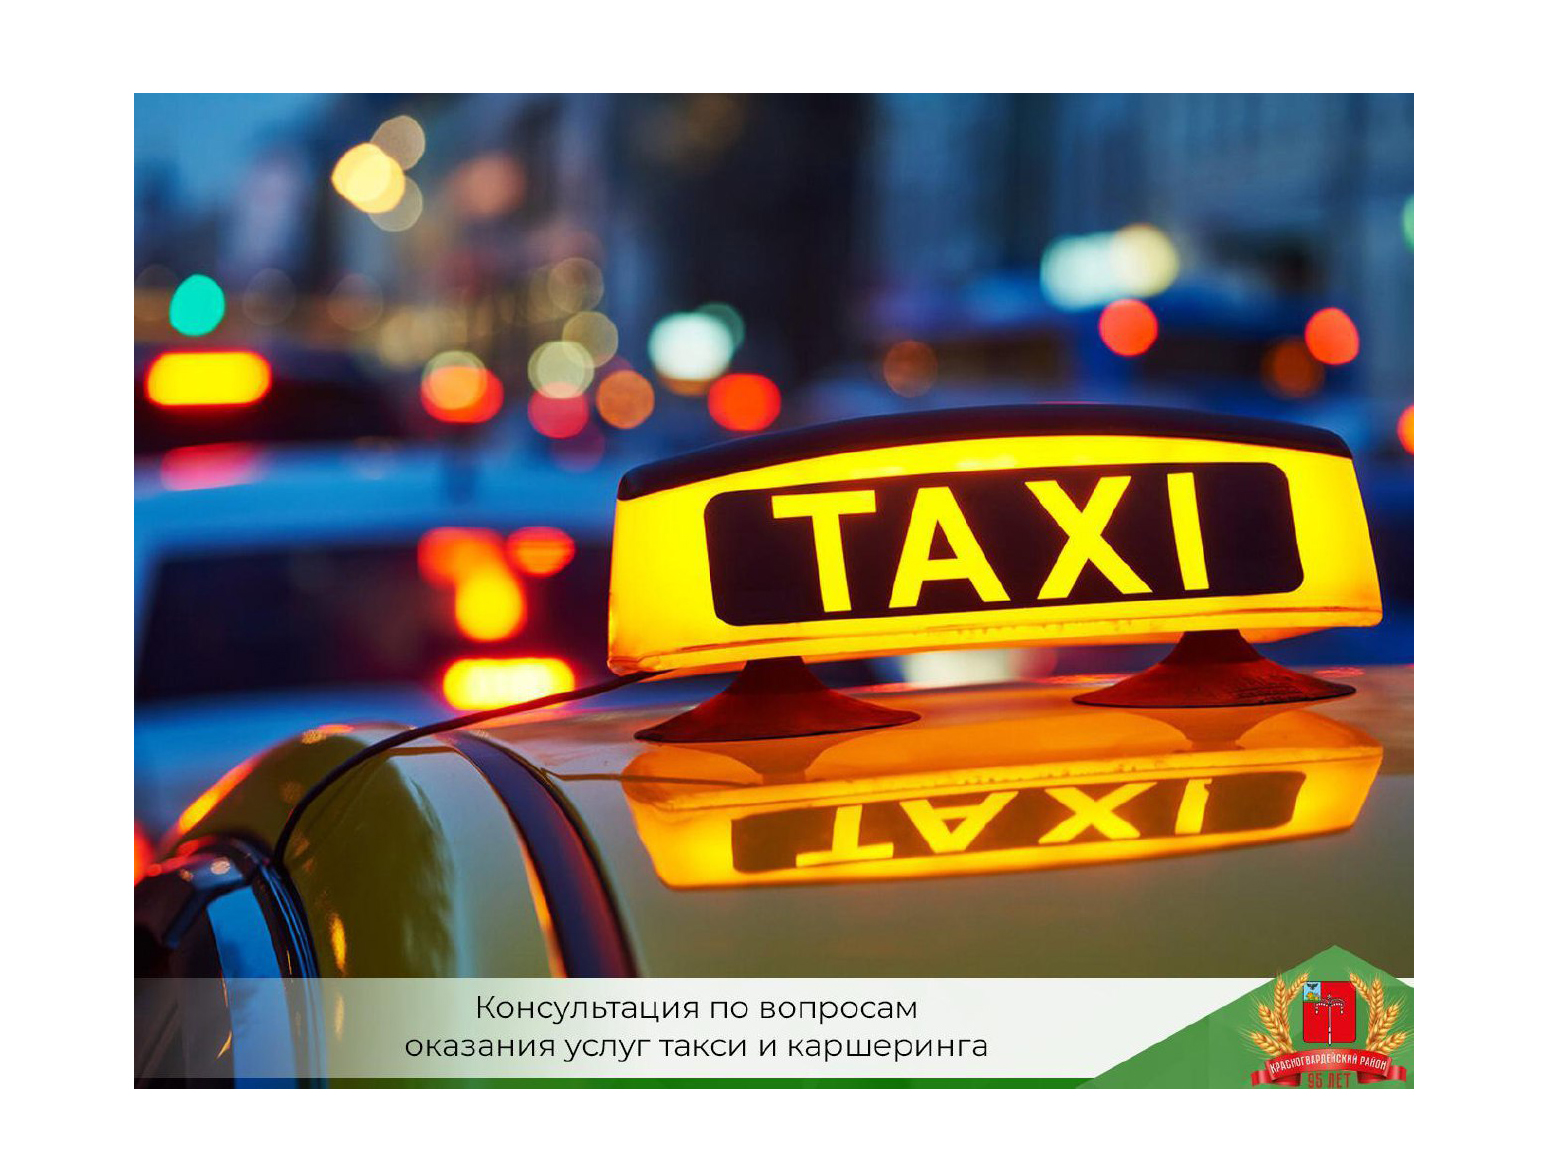 Красногвардейцы могут получить консультацию по вопросам оказания услуг такси и каршеринга.